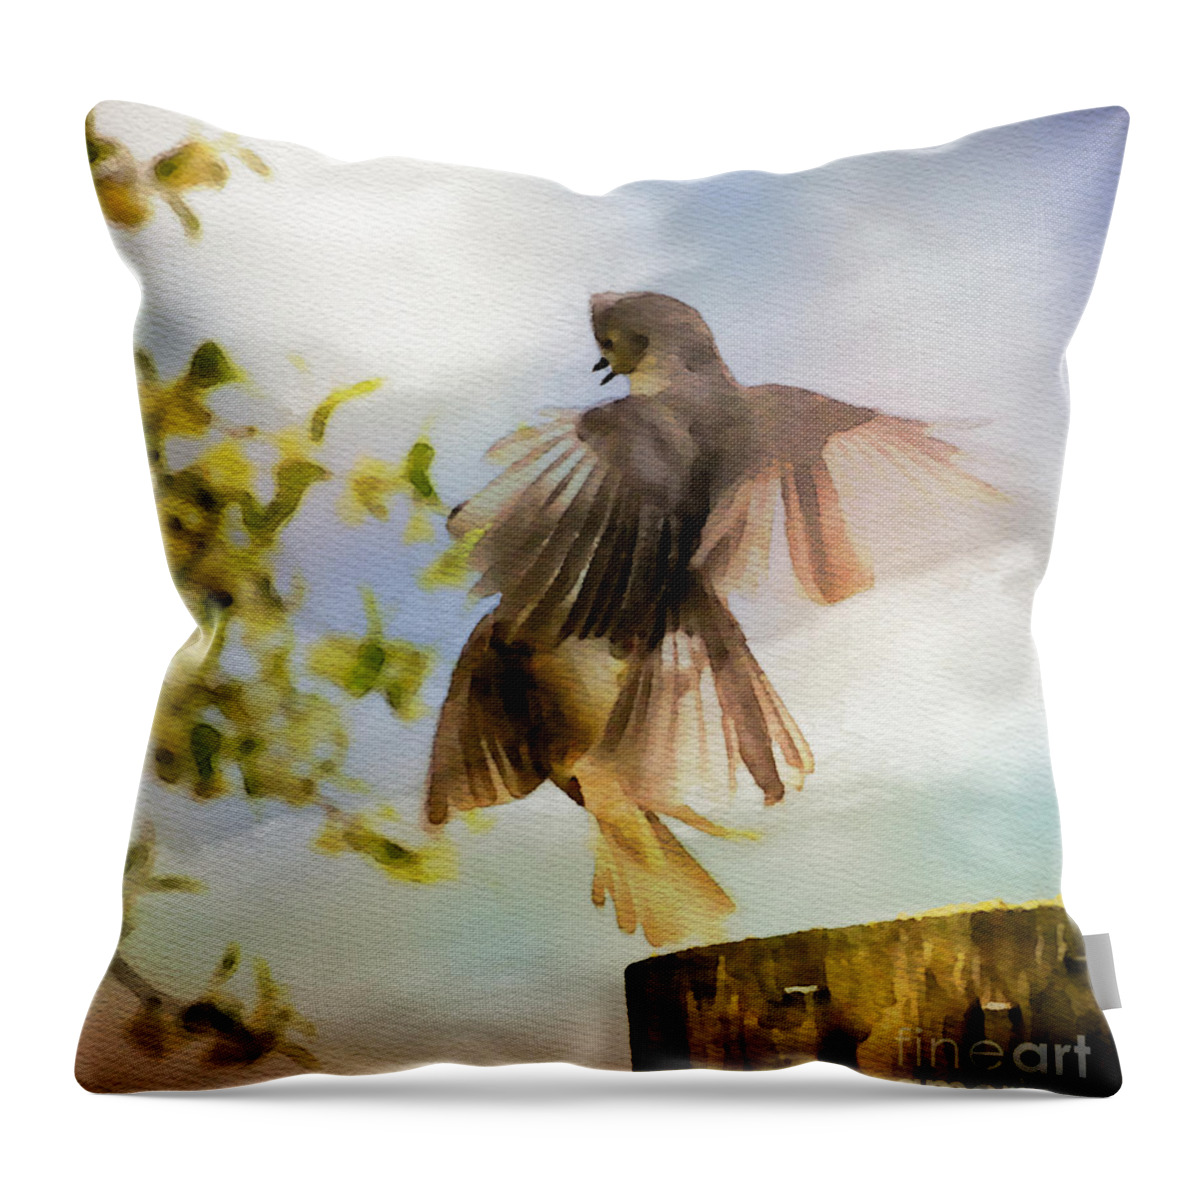 Bird Throw Pillow featuring the photograph Bird Dance by Kerri Farley